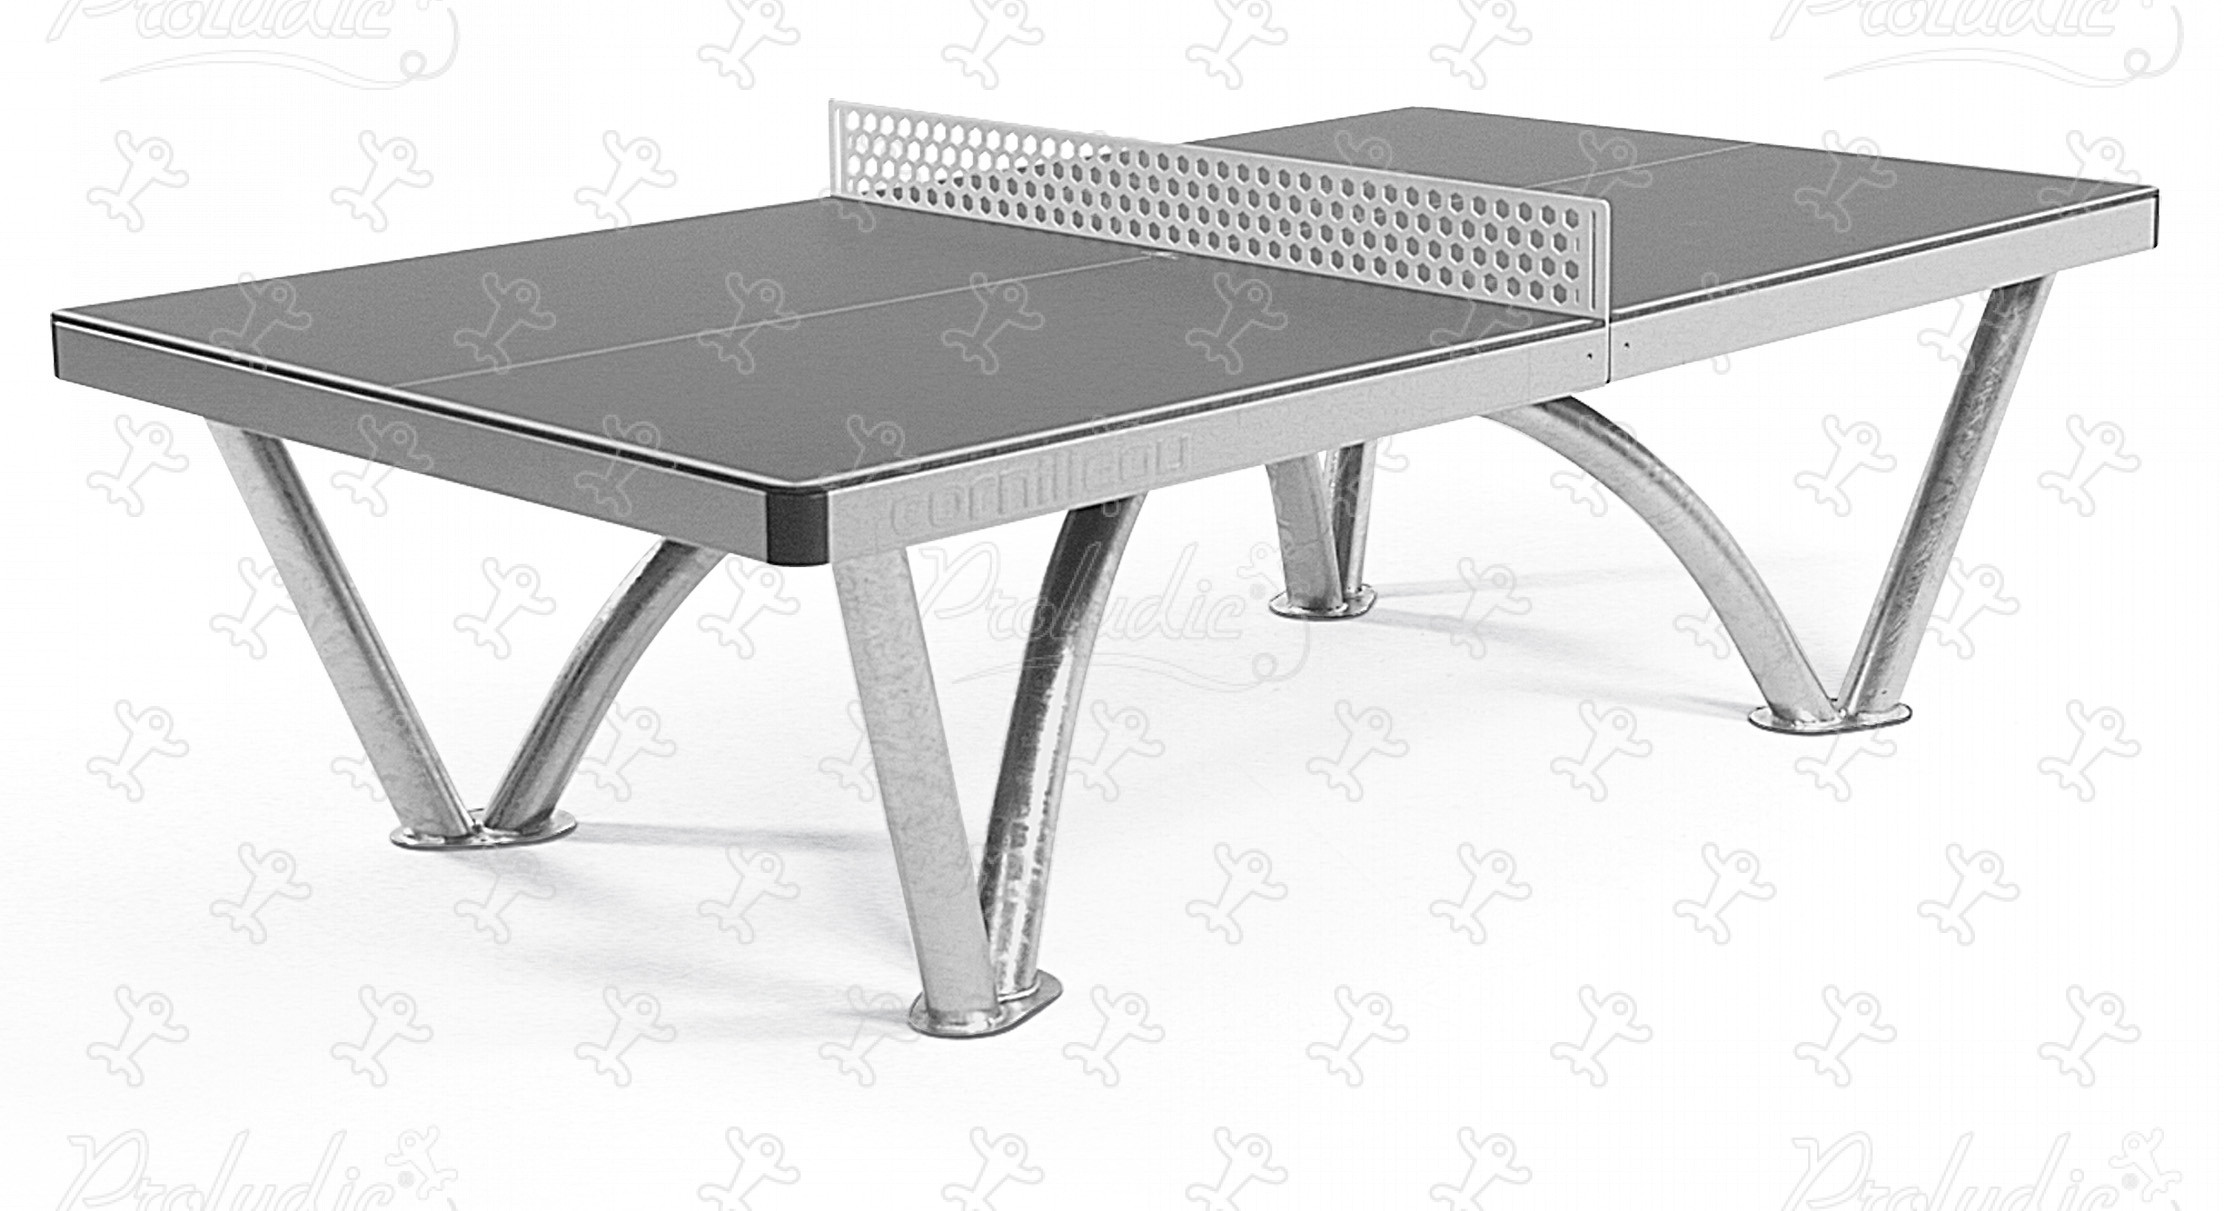 Table de ping-pong Nova pour aménagements sportifs ext�